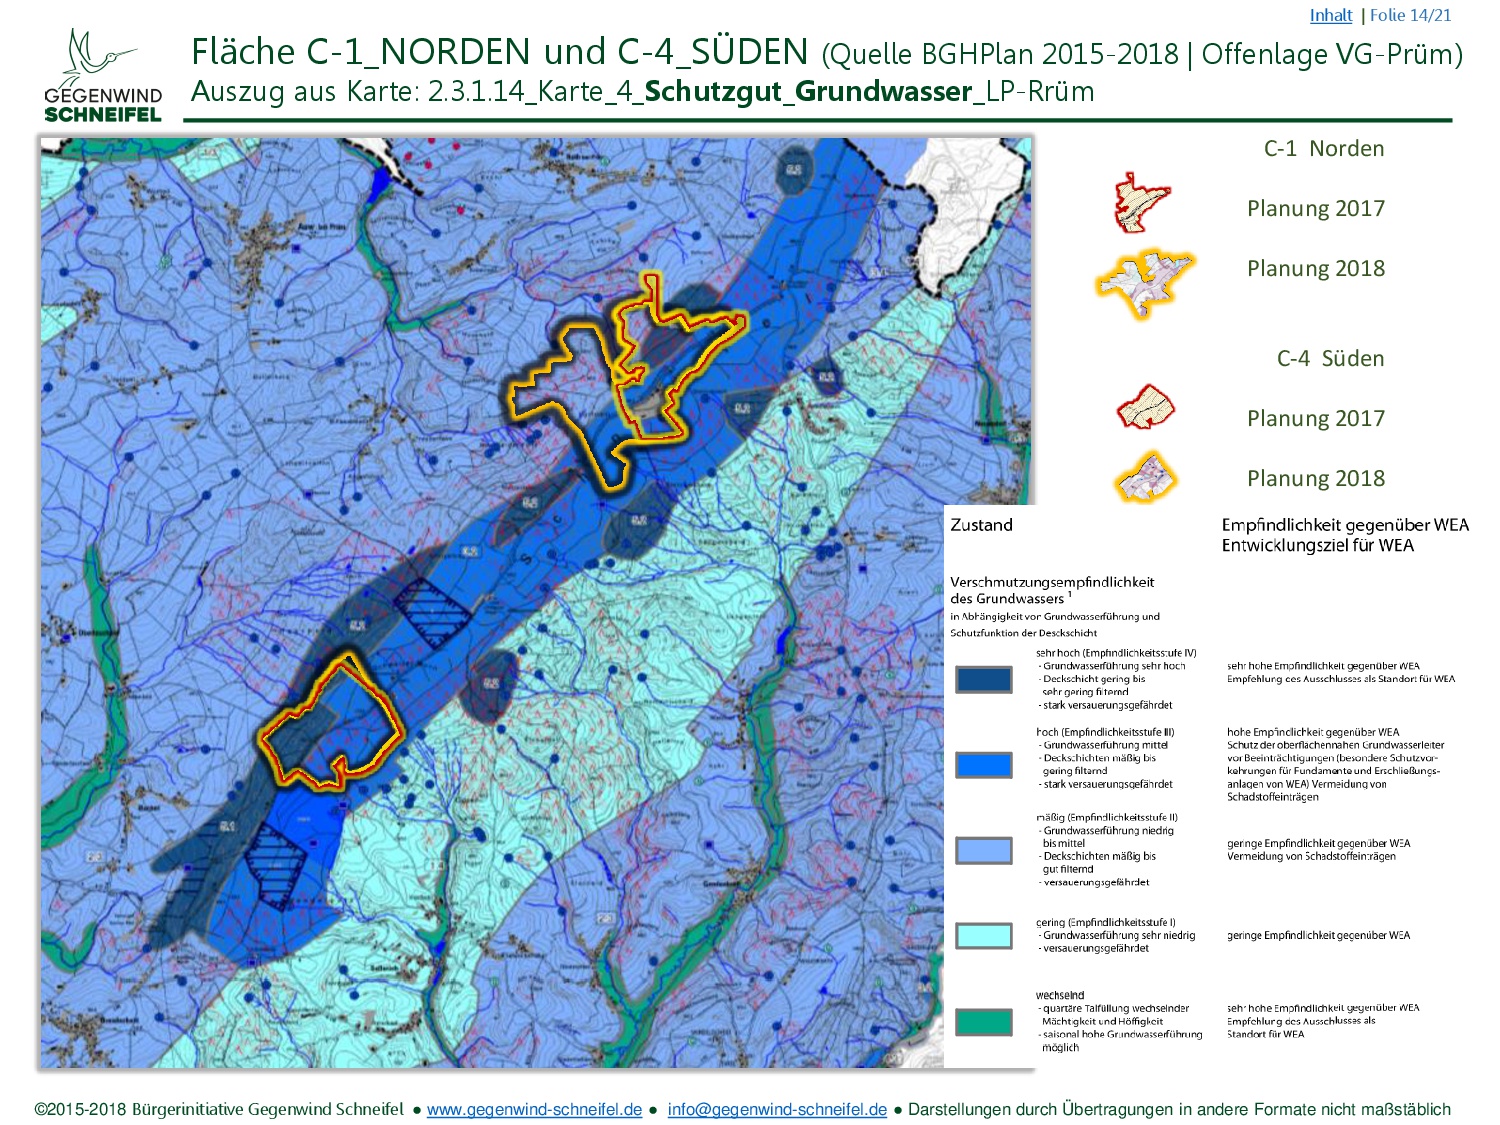 FNP Schneifel C1 C4 BiGWS C2018 (14 22) (Karte 4 Schutzgut Grundwasser)